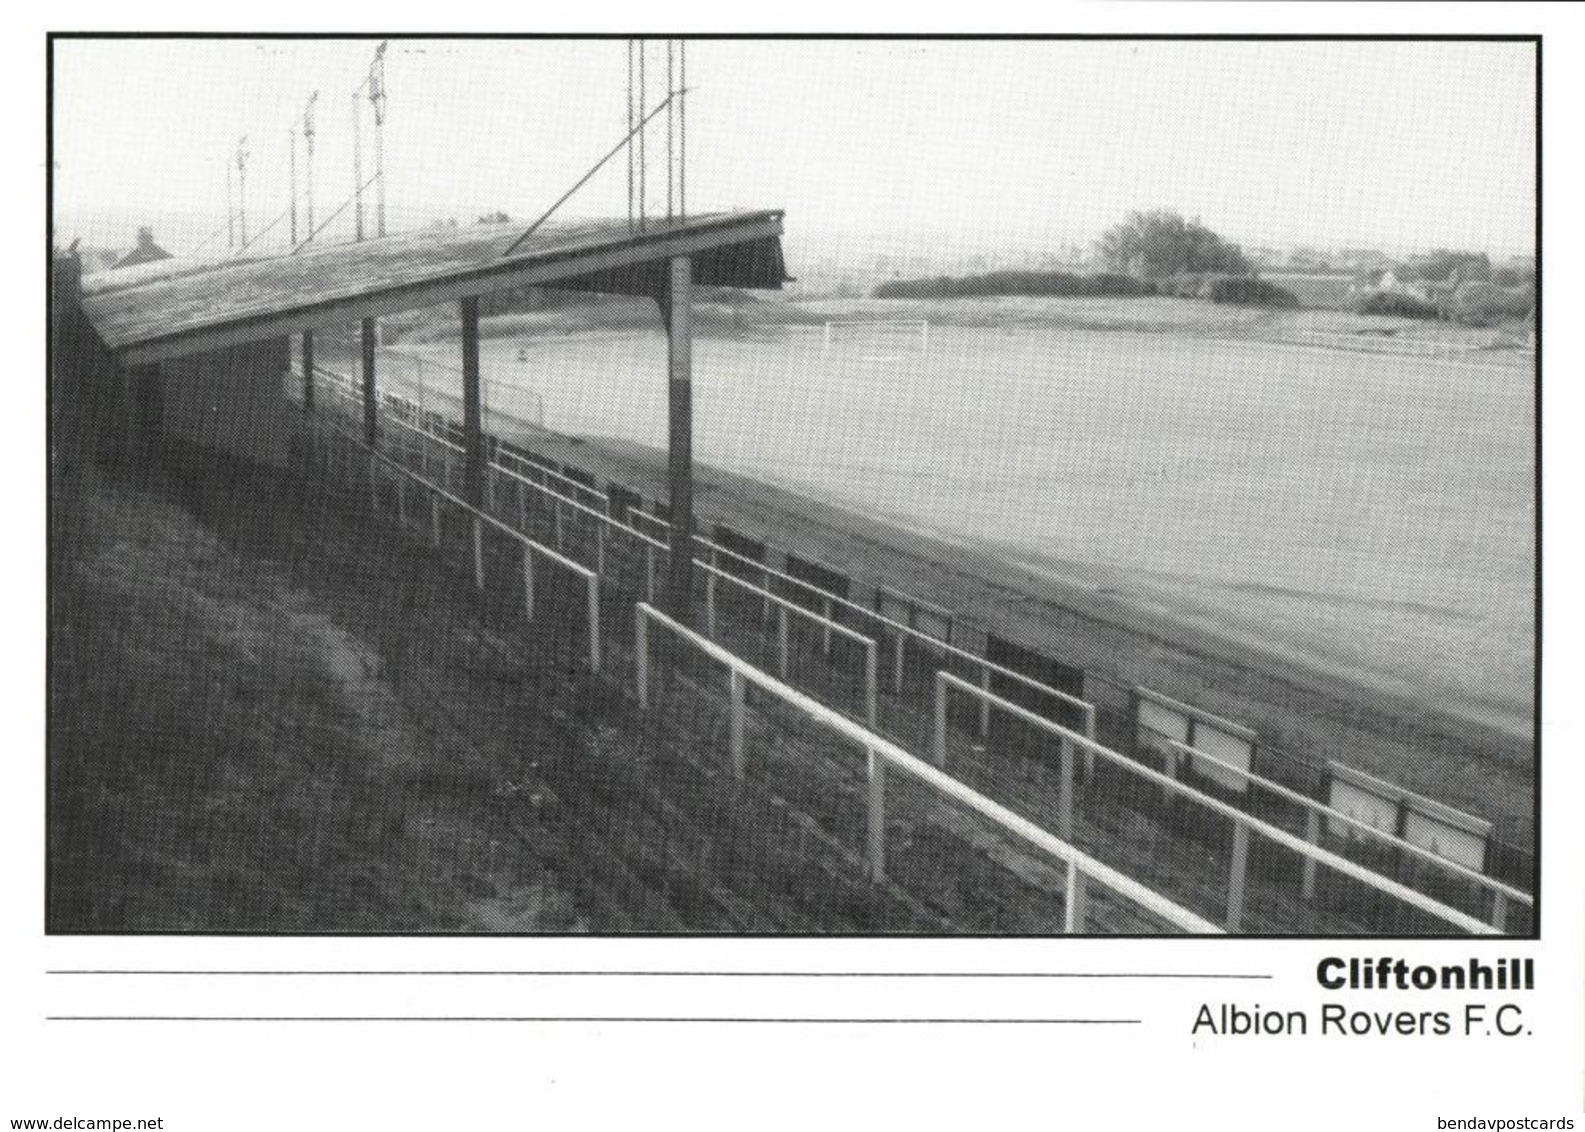 Scotland, COATBRIDGE, Cliftonhill, Albion Rovers F.C. (1990s) Stadium Postcard - Soccer